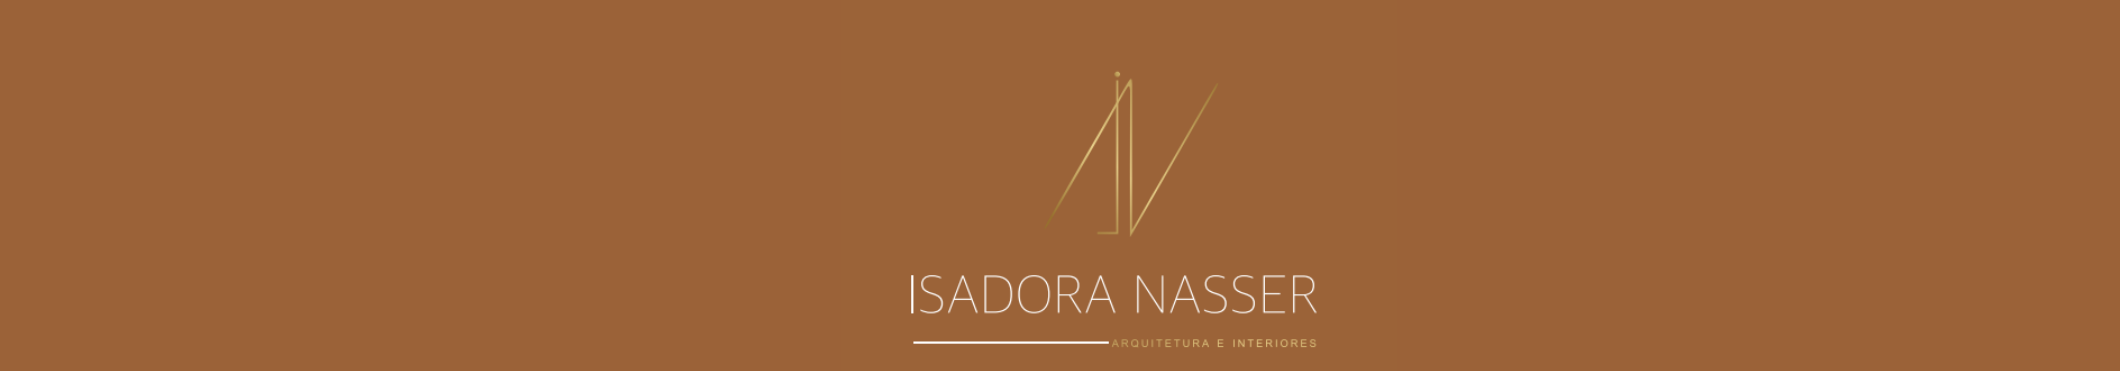 Баннер профиля Isadora Nasser